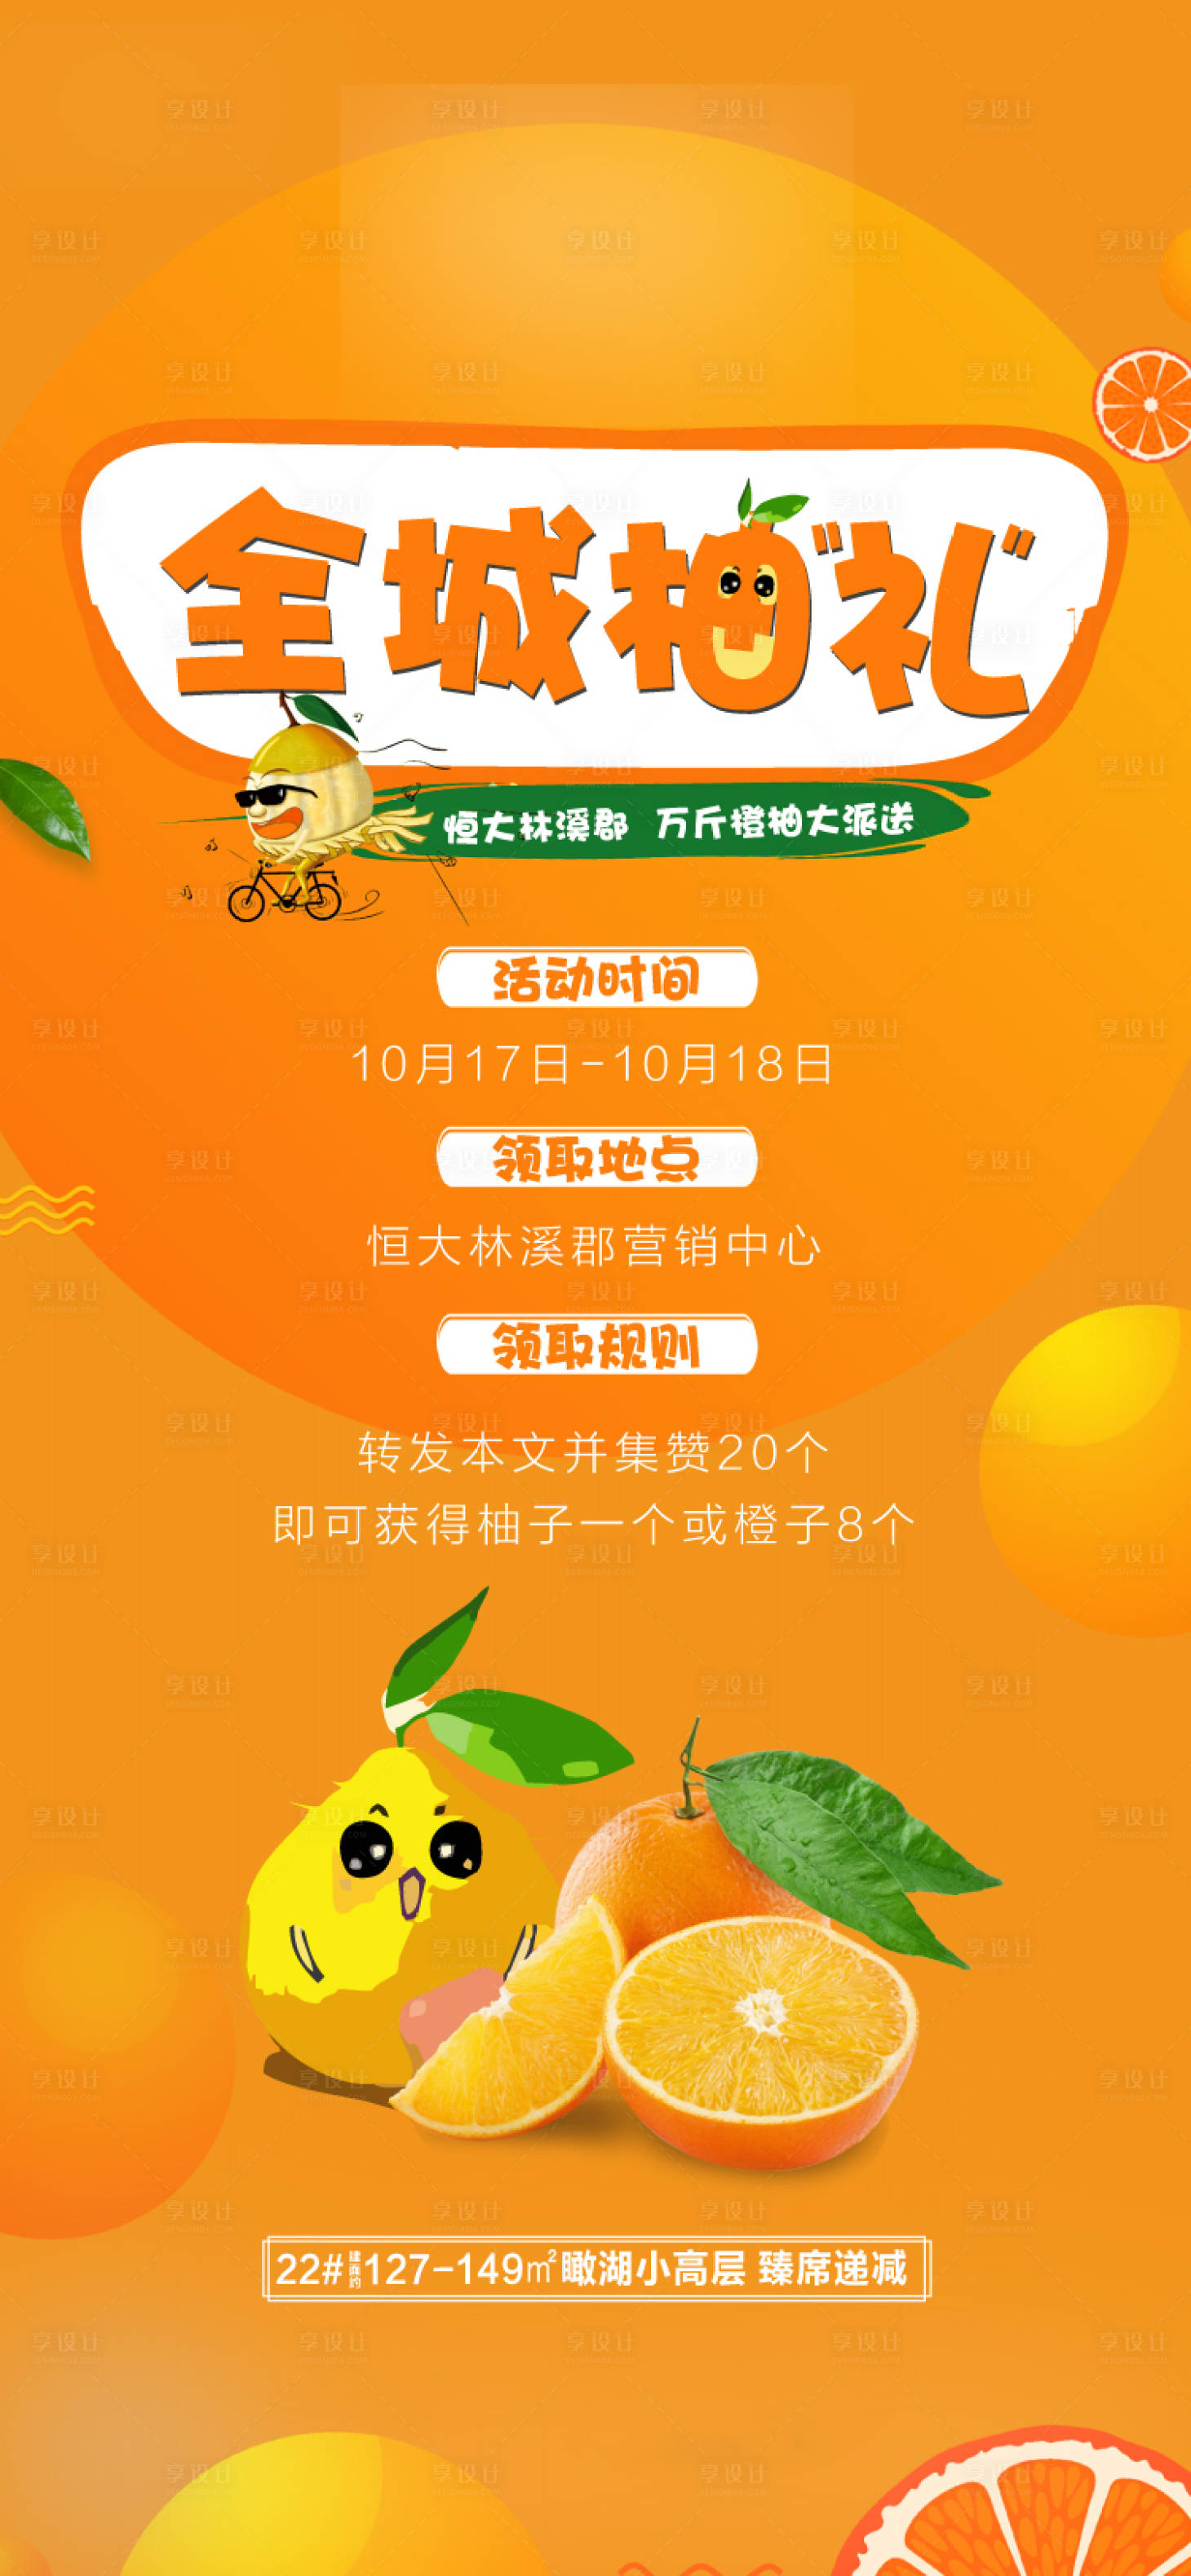 全网最全介绍柚子社第十作gal―RJ - 哔哩哔哩